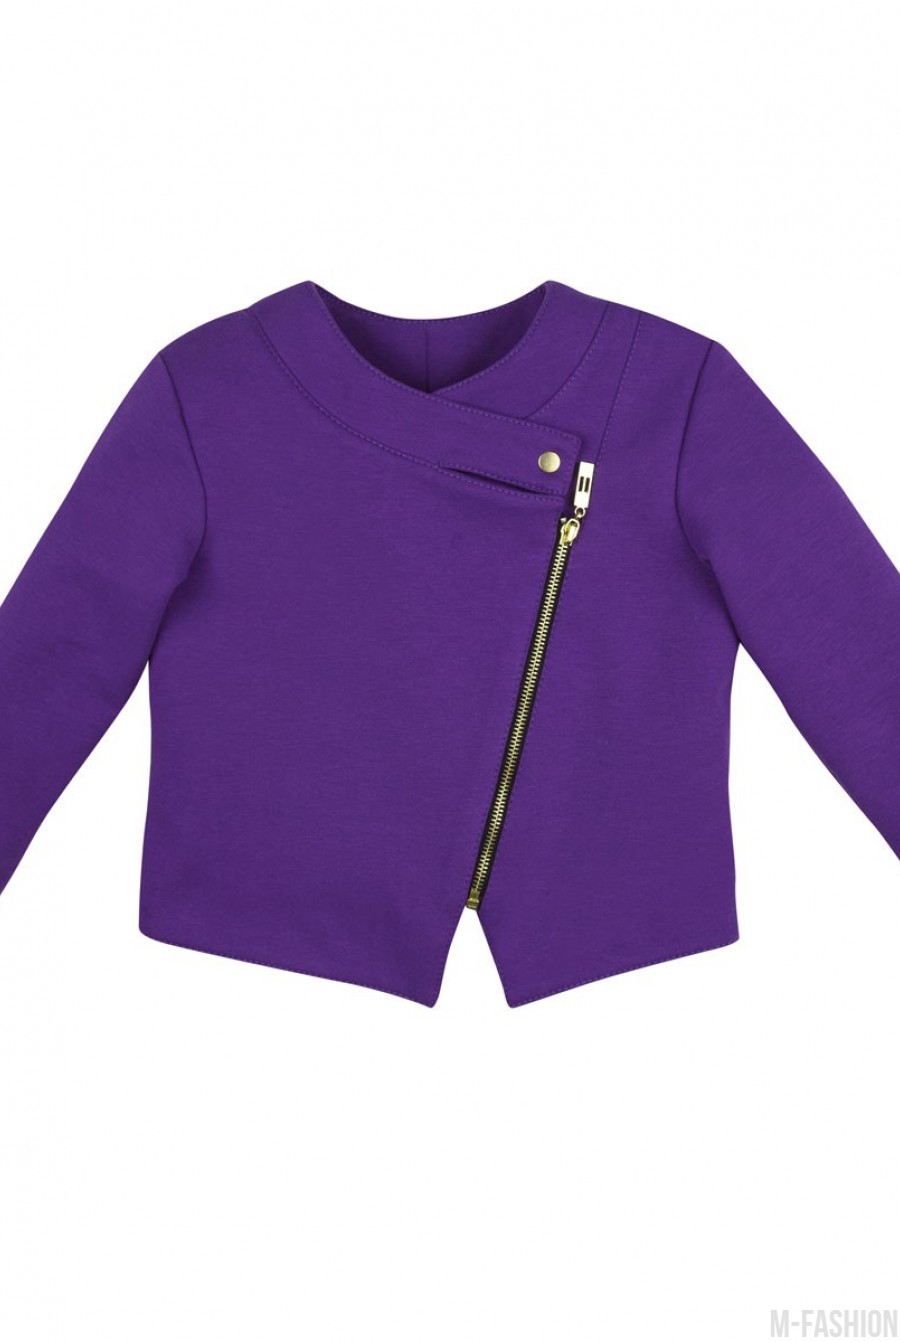 Фиолетовая легкая трикотажная куртка на подкладке с ассиметричной застежкой - Фото 1